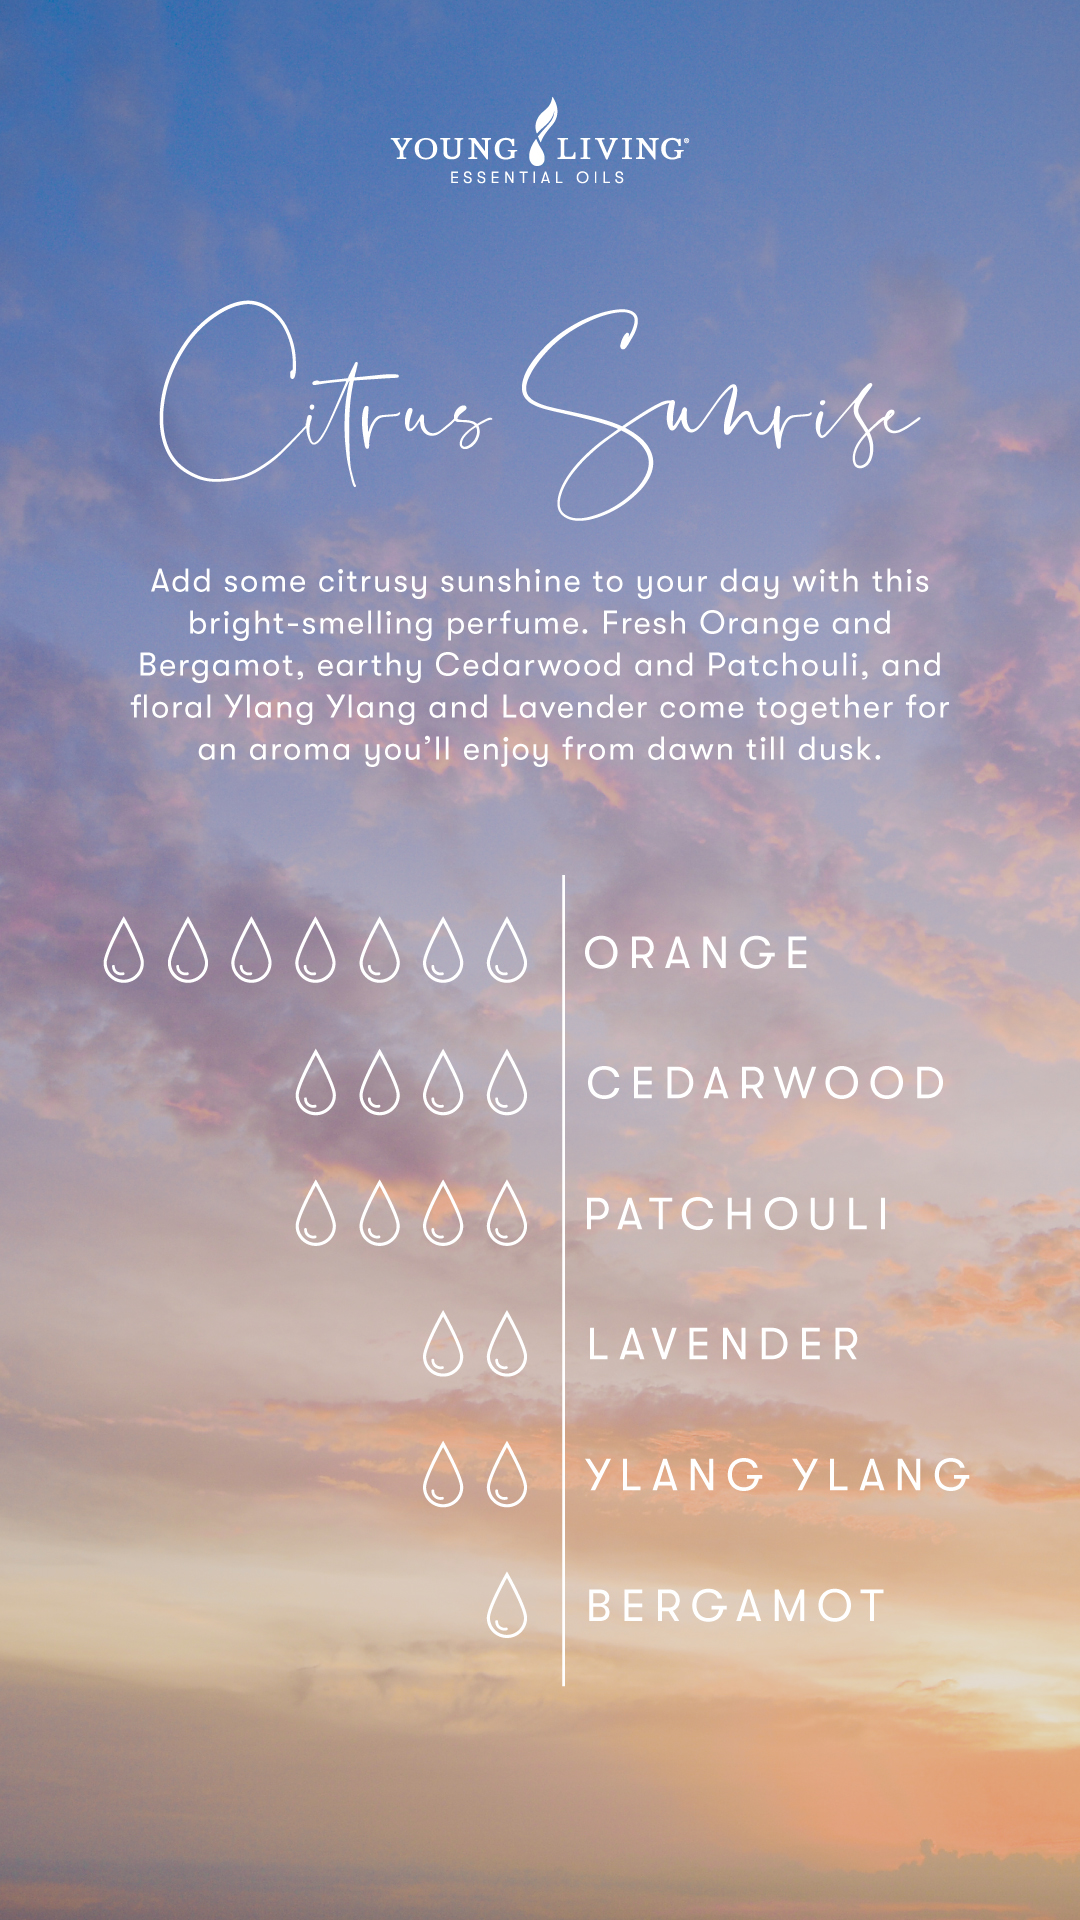 Citrus Sunrise Perfume Recipe